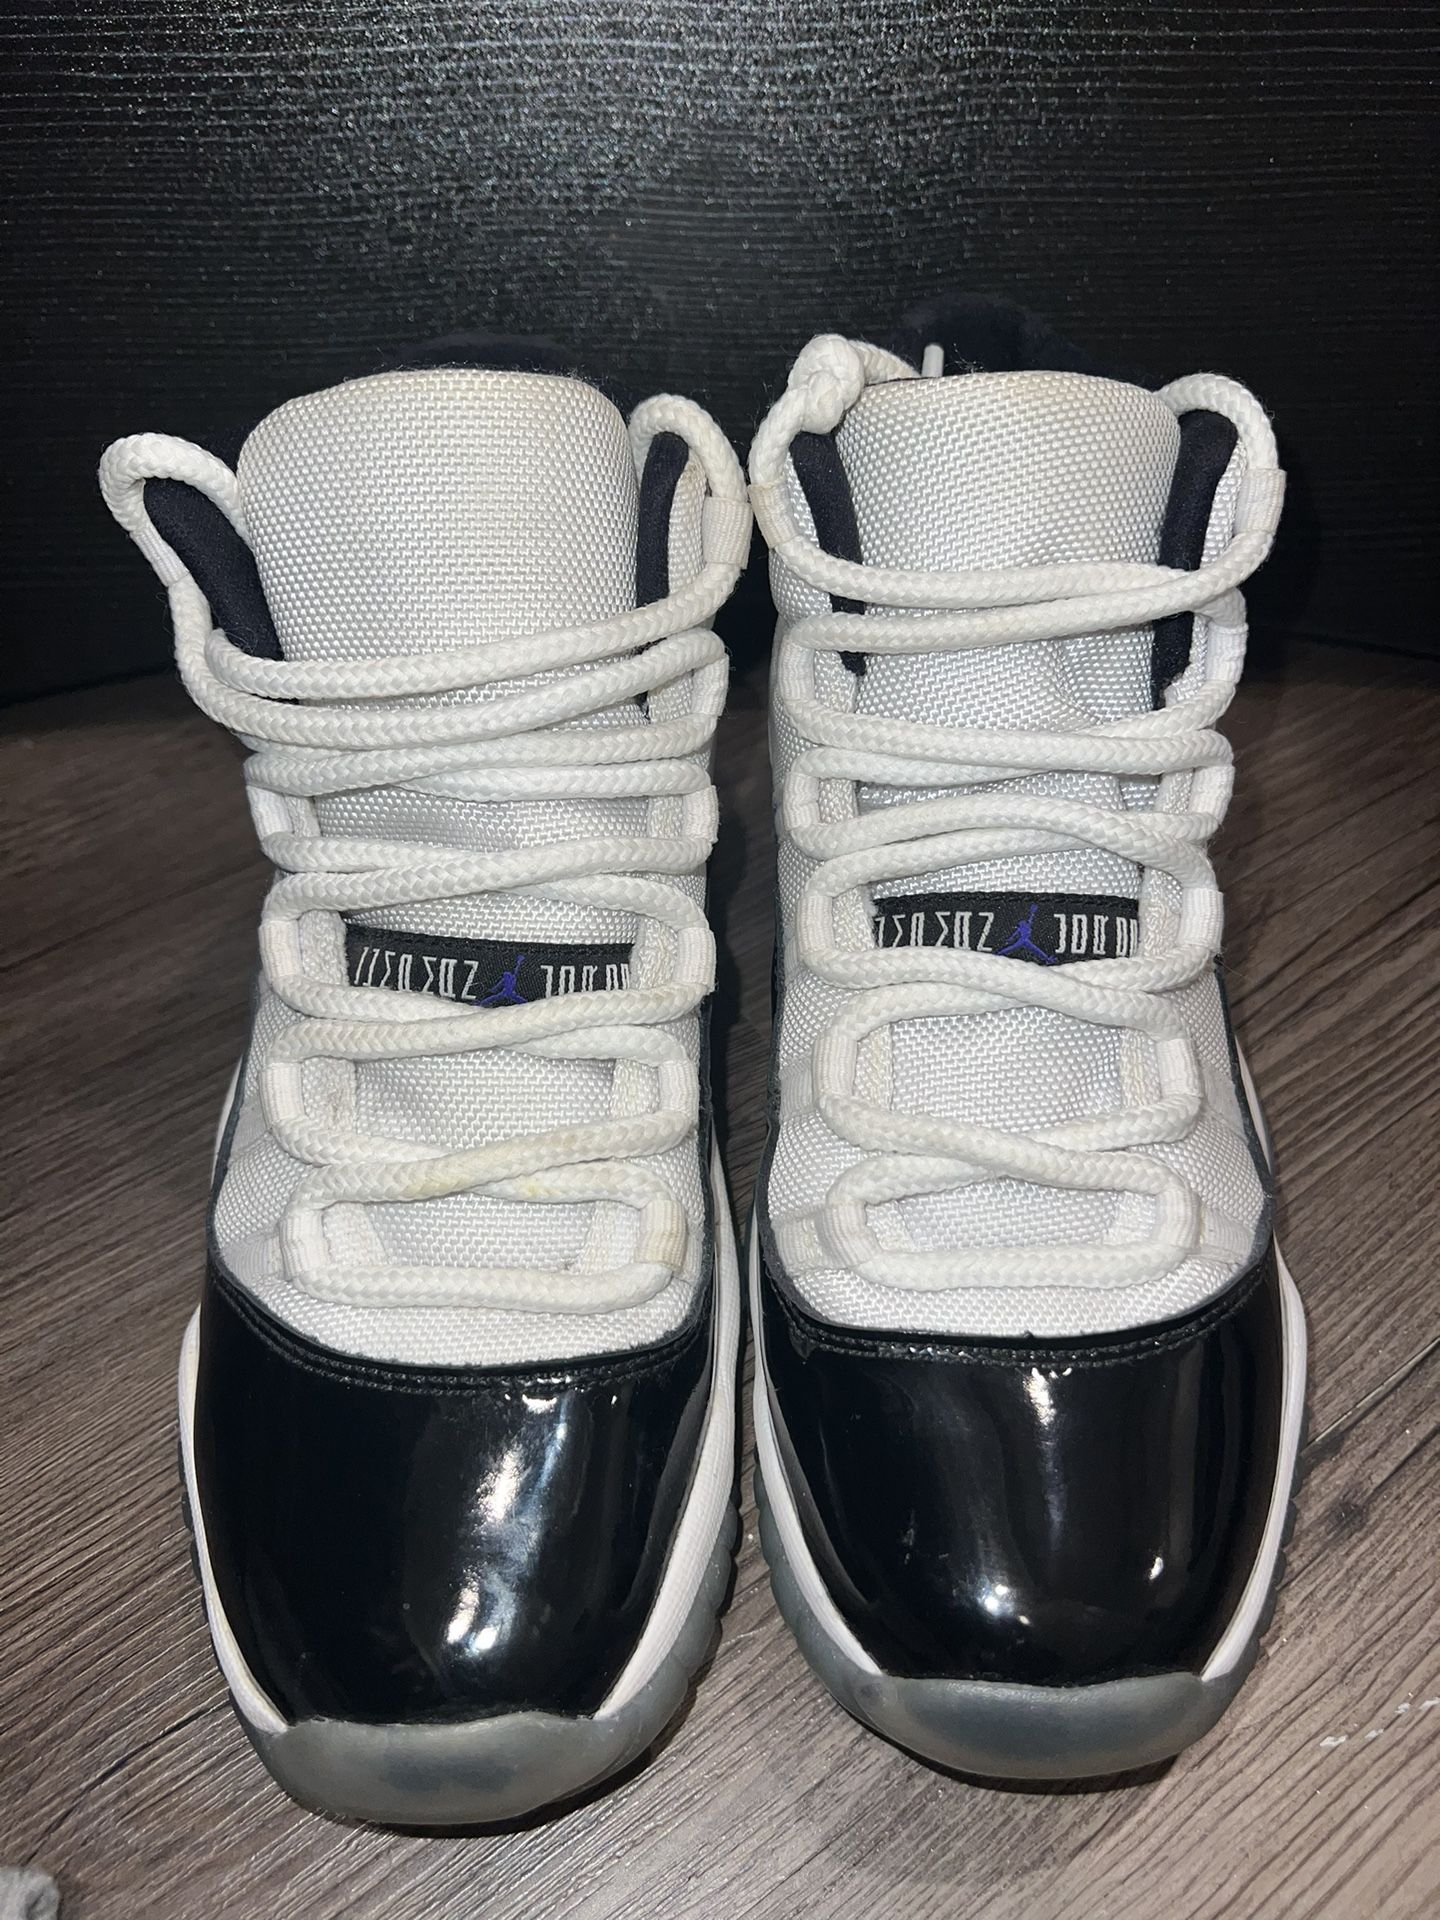 Black & White Jordan 11s